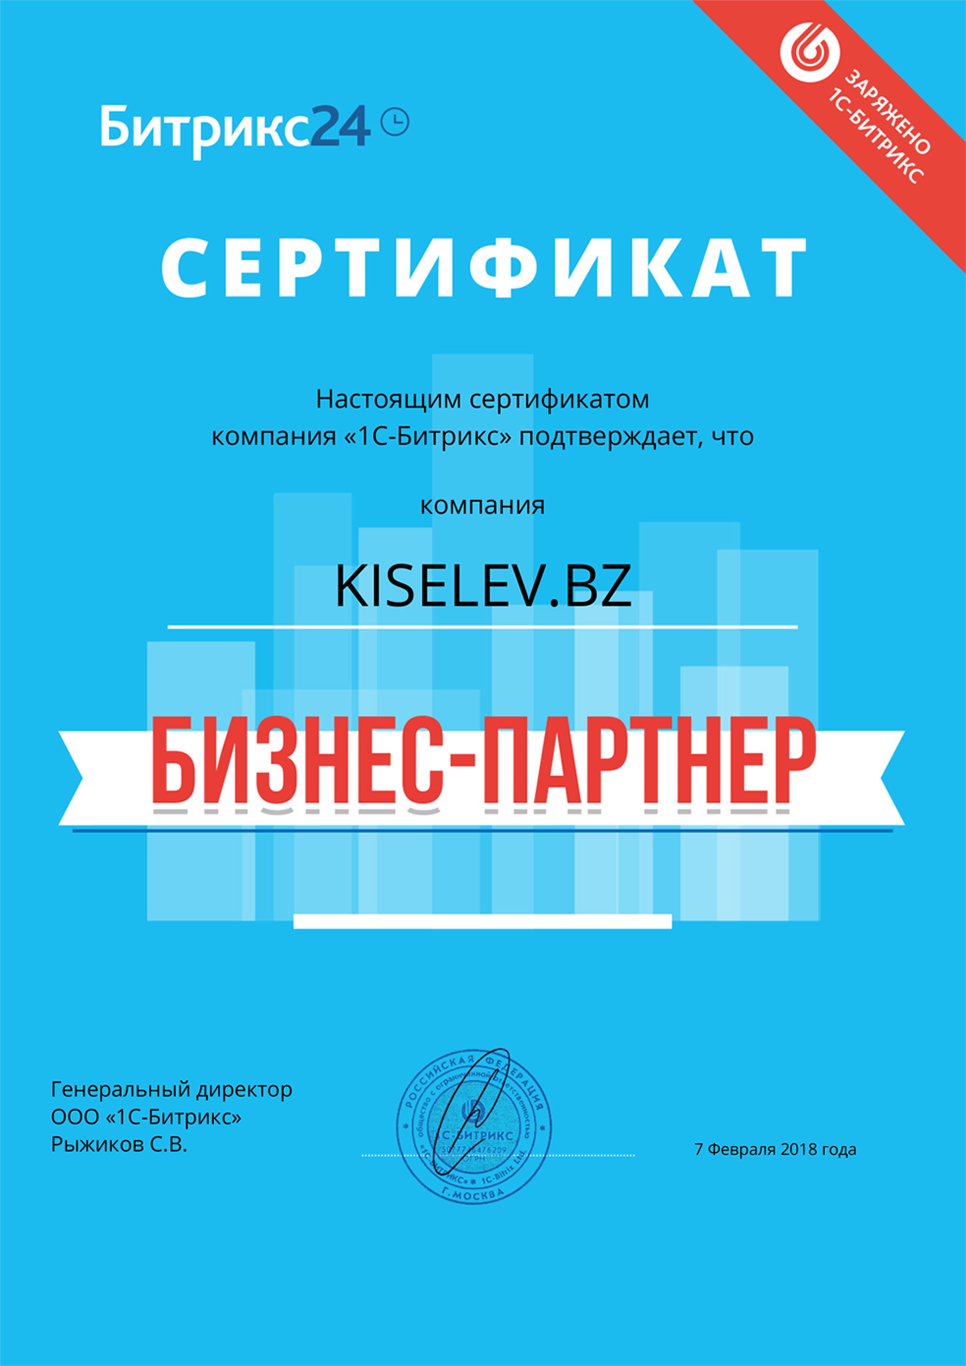 Сертификат партнёра по АМОСРМ в Старой Руссе